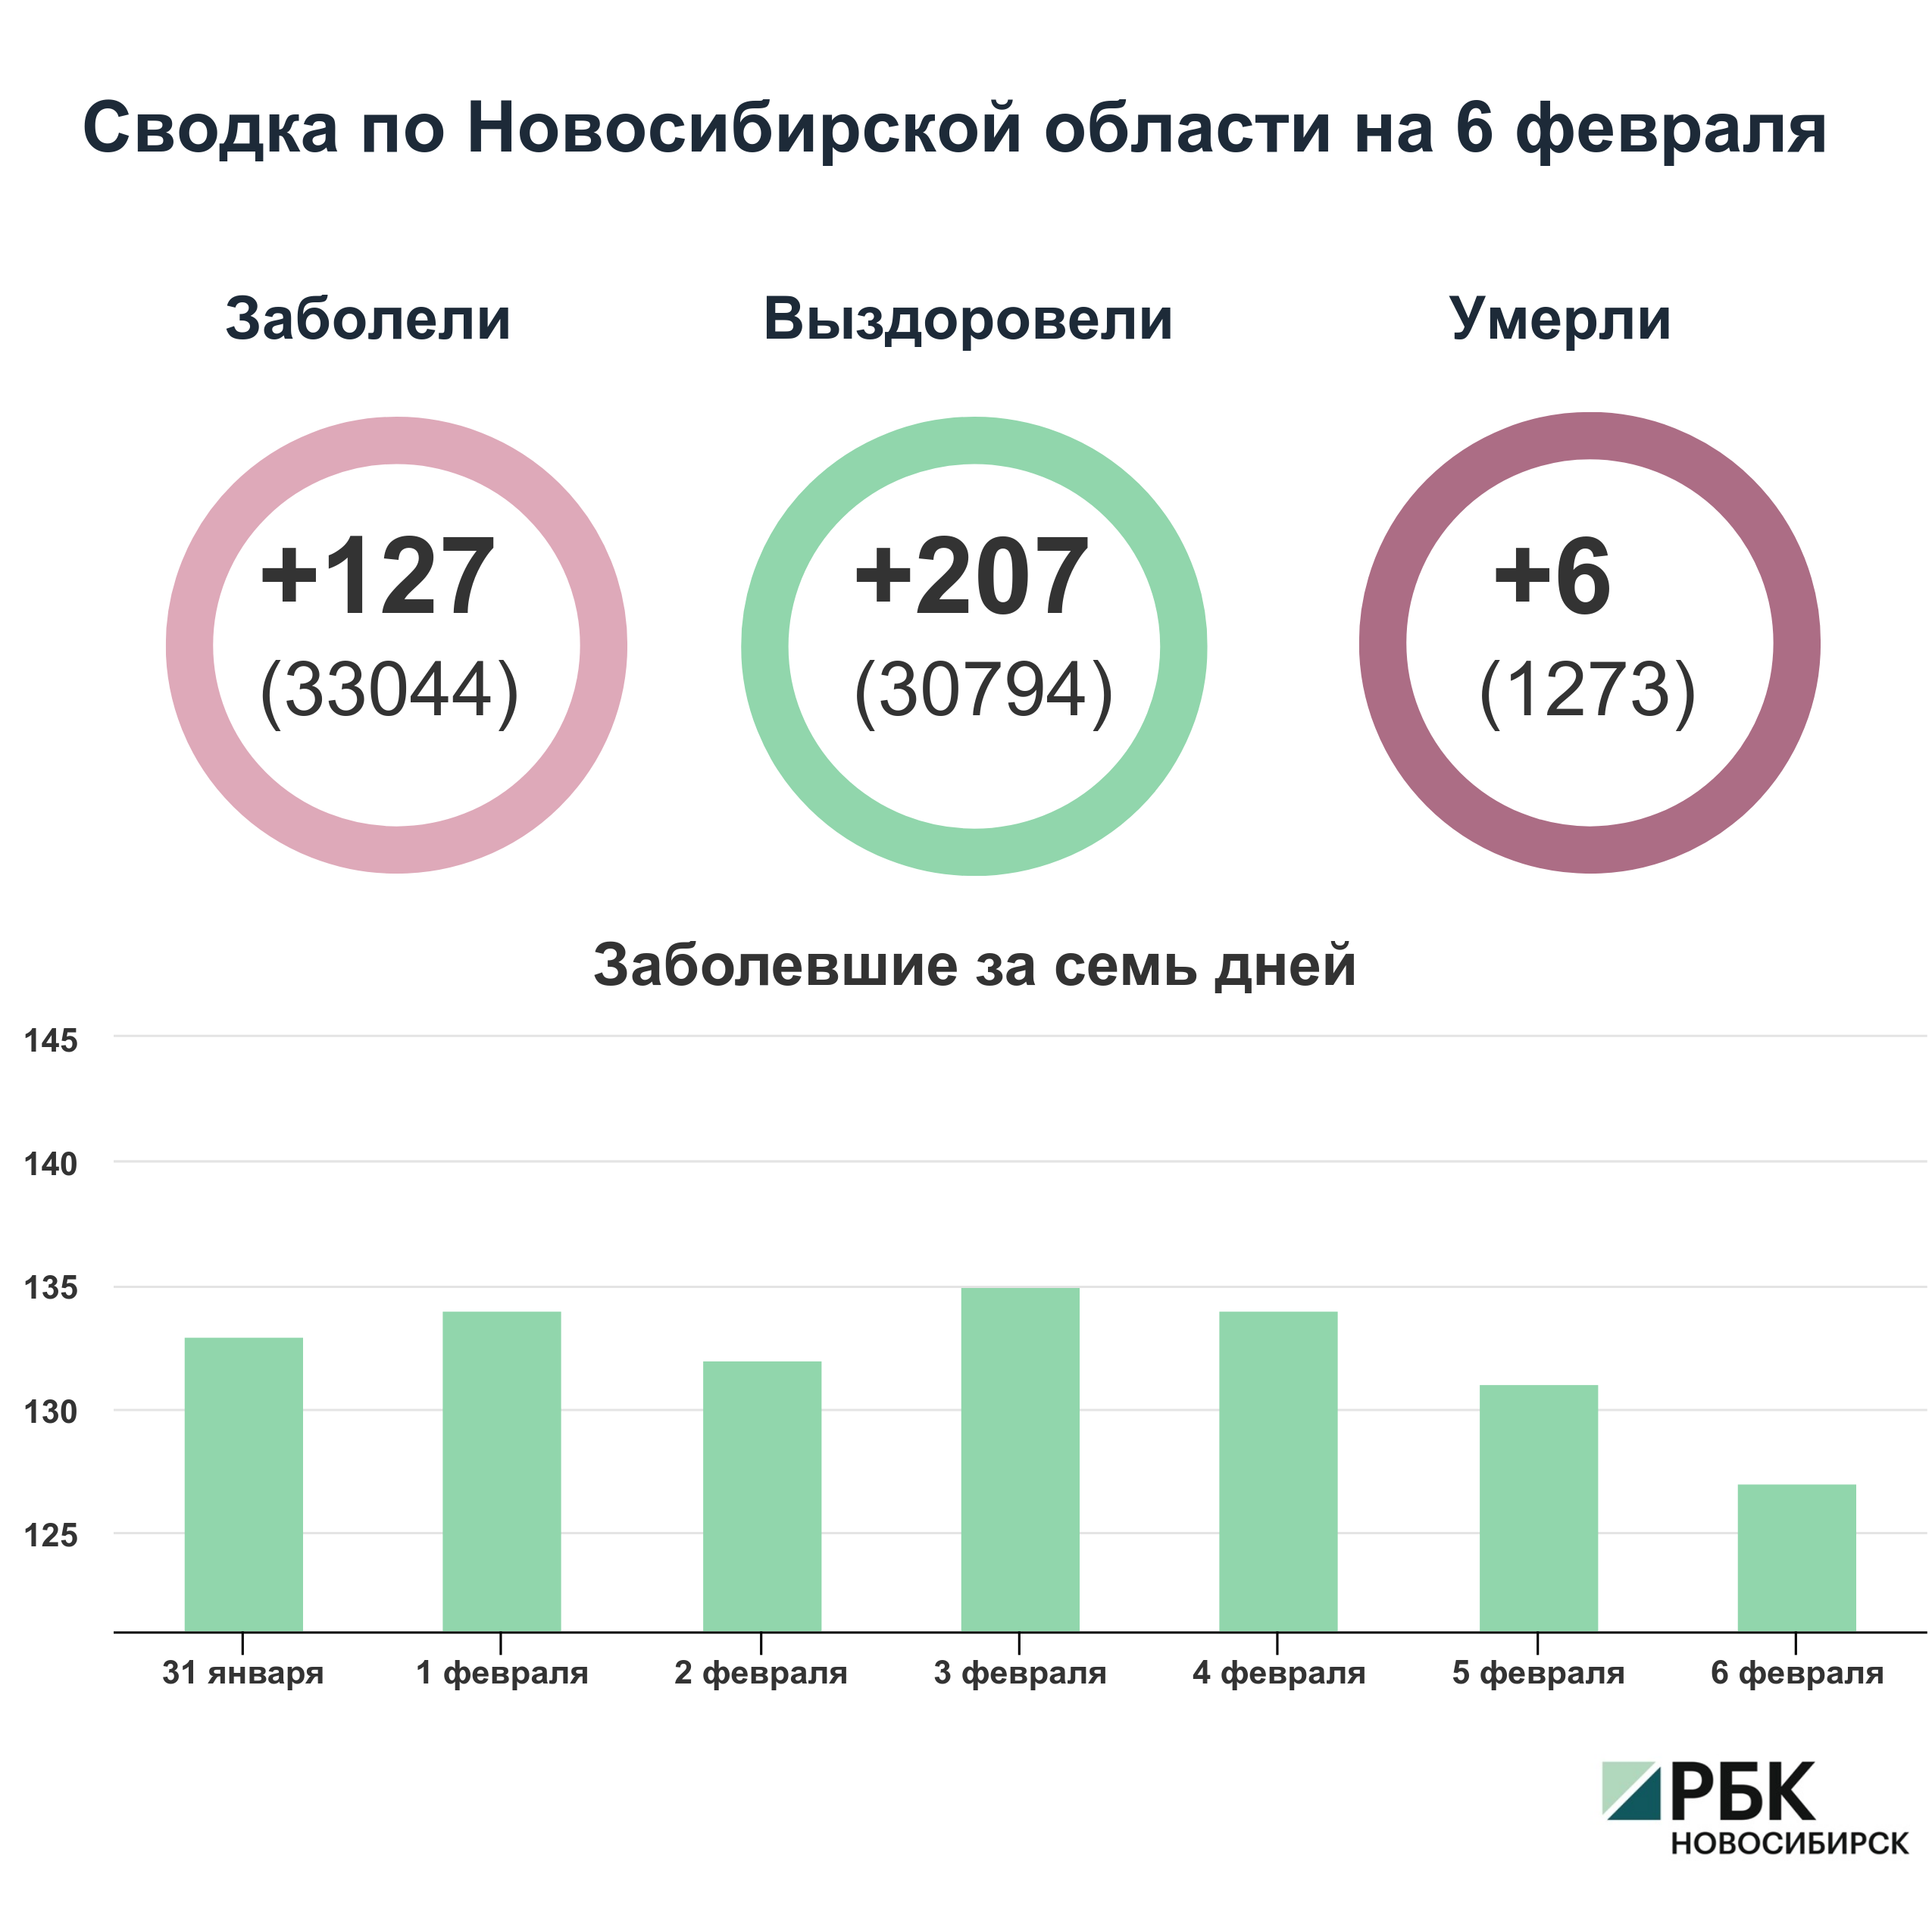 Коронавирус в Новосибирске: сводка на 6 февраля